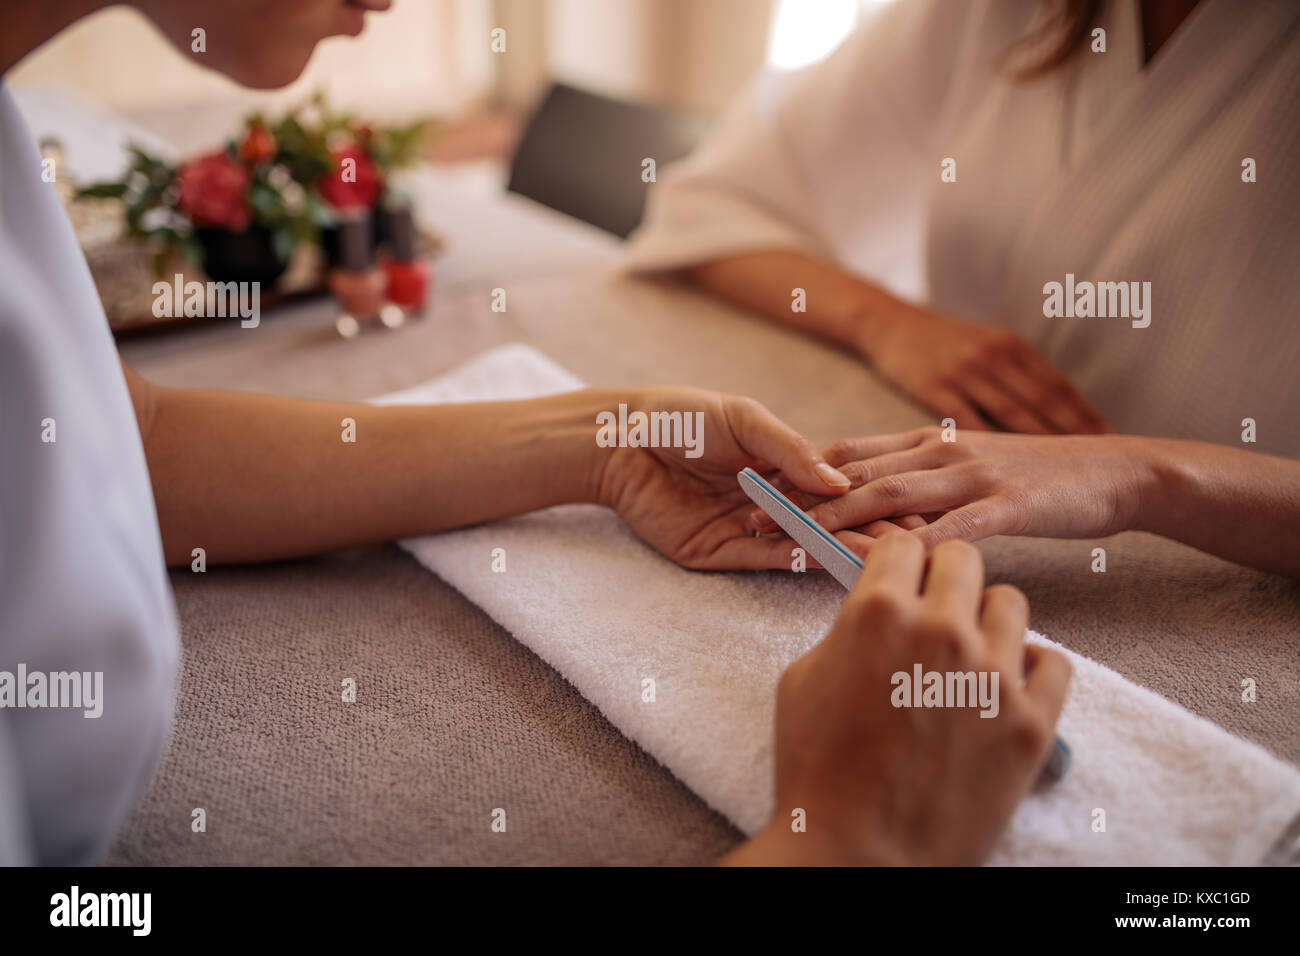 Mains de la manucure ongles le dépôt de femme client avec un tampon blanc in nail salon. Se concentrer sur les mains de manucure ongles en forme de femme Banque D'Images